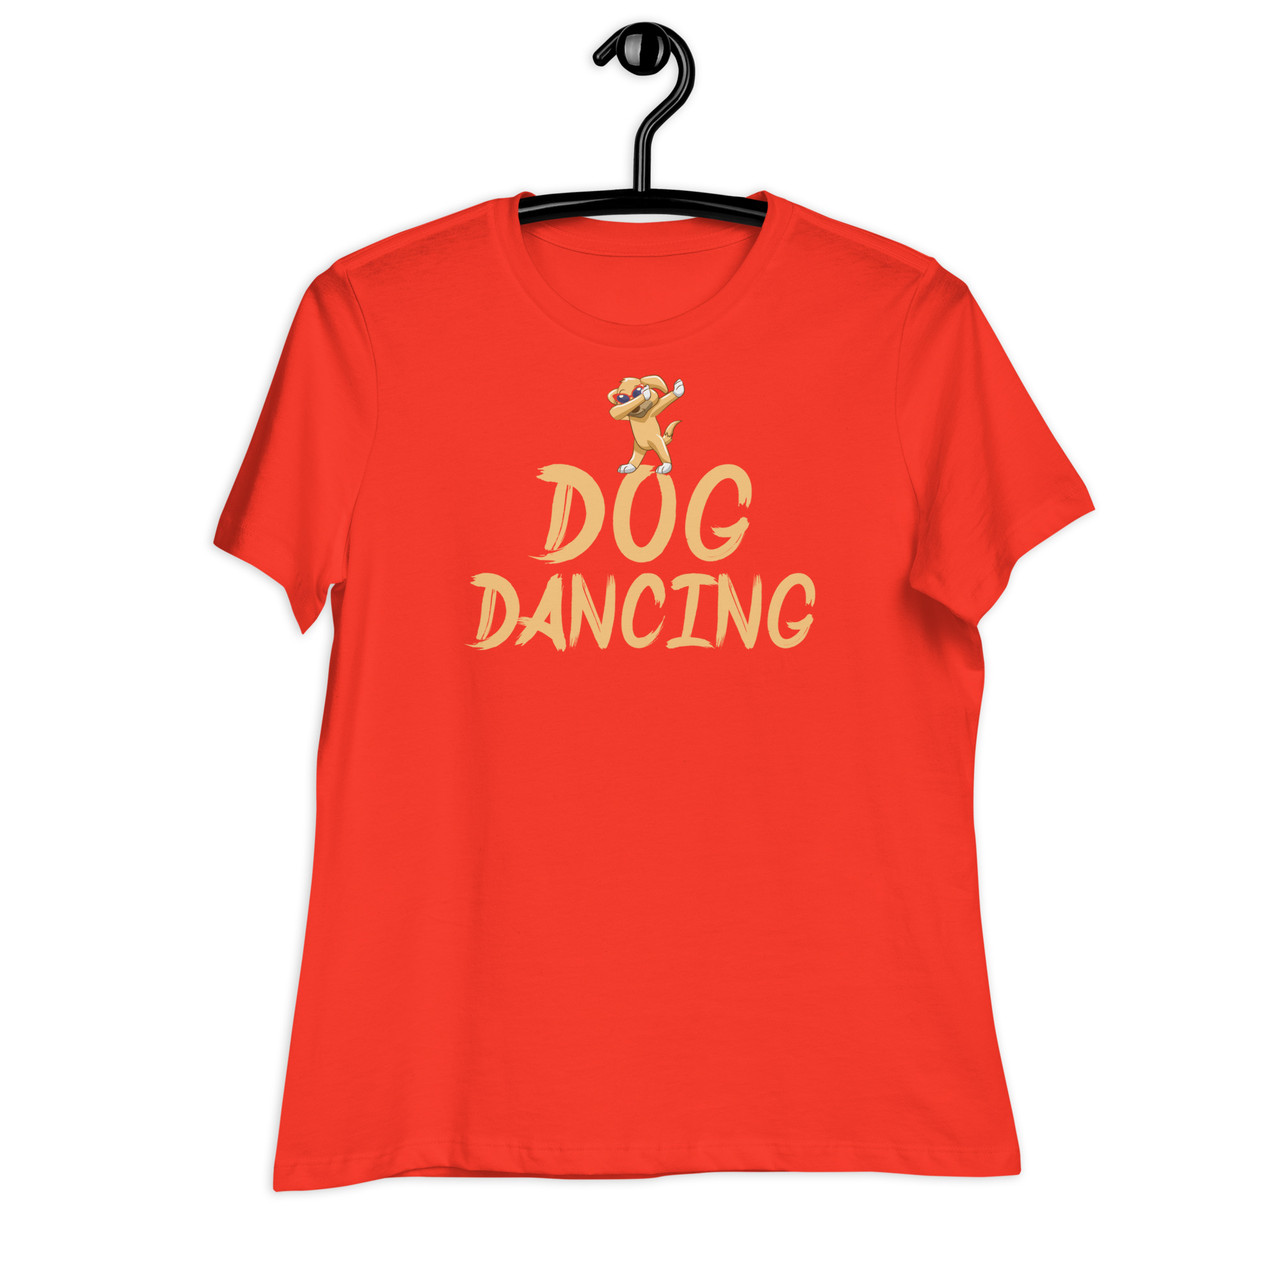 Dog Dancing Women's Relaxed T-Shirt - Bella + Canvas 6400 